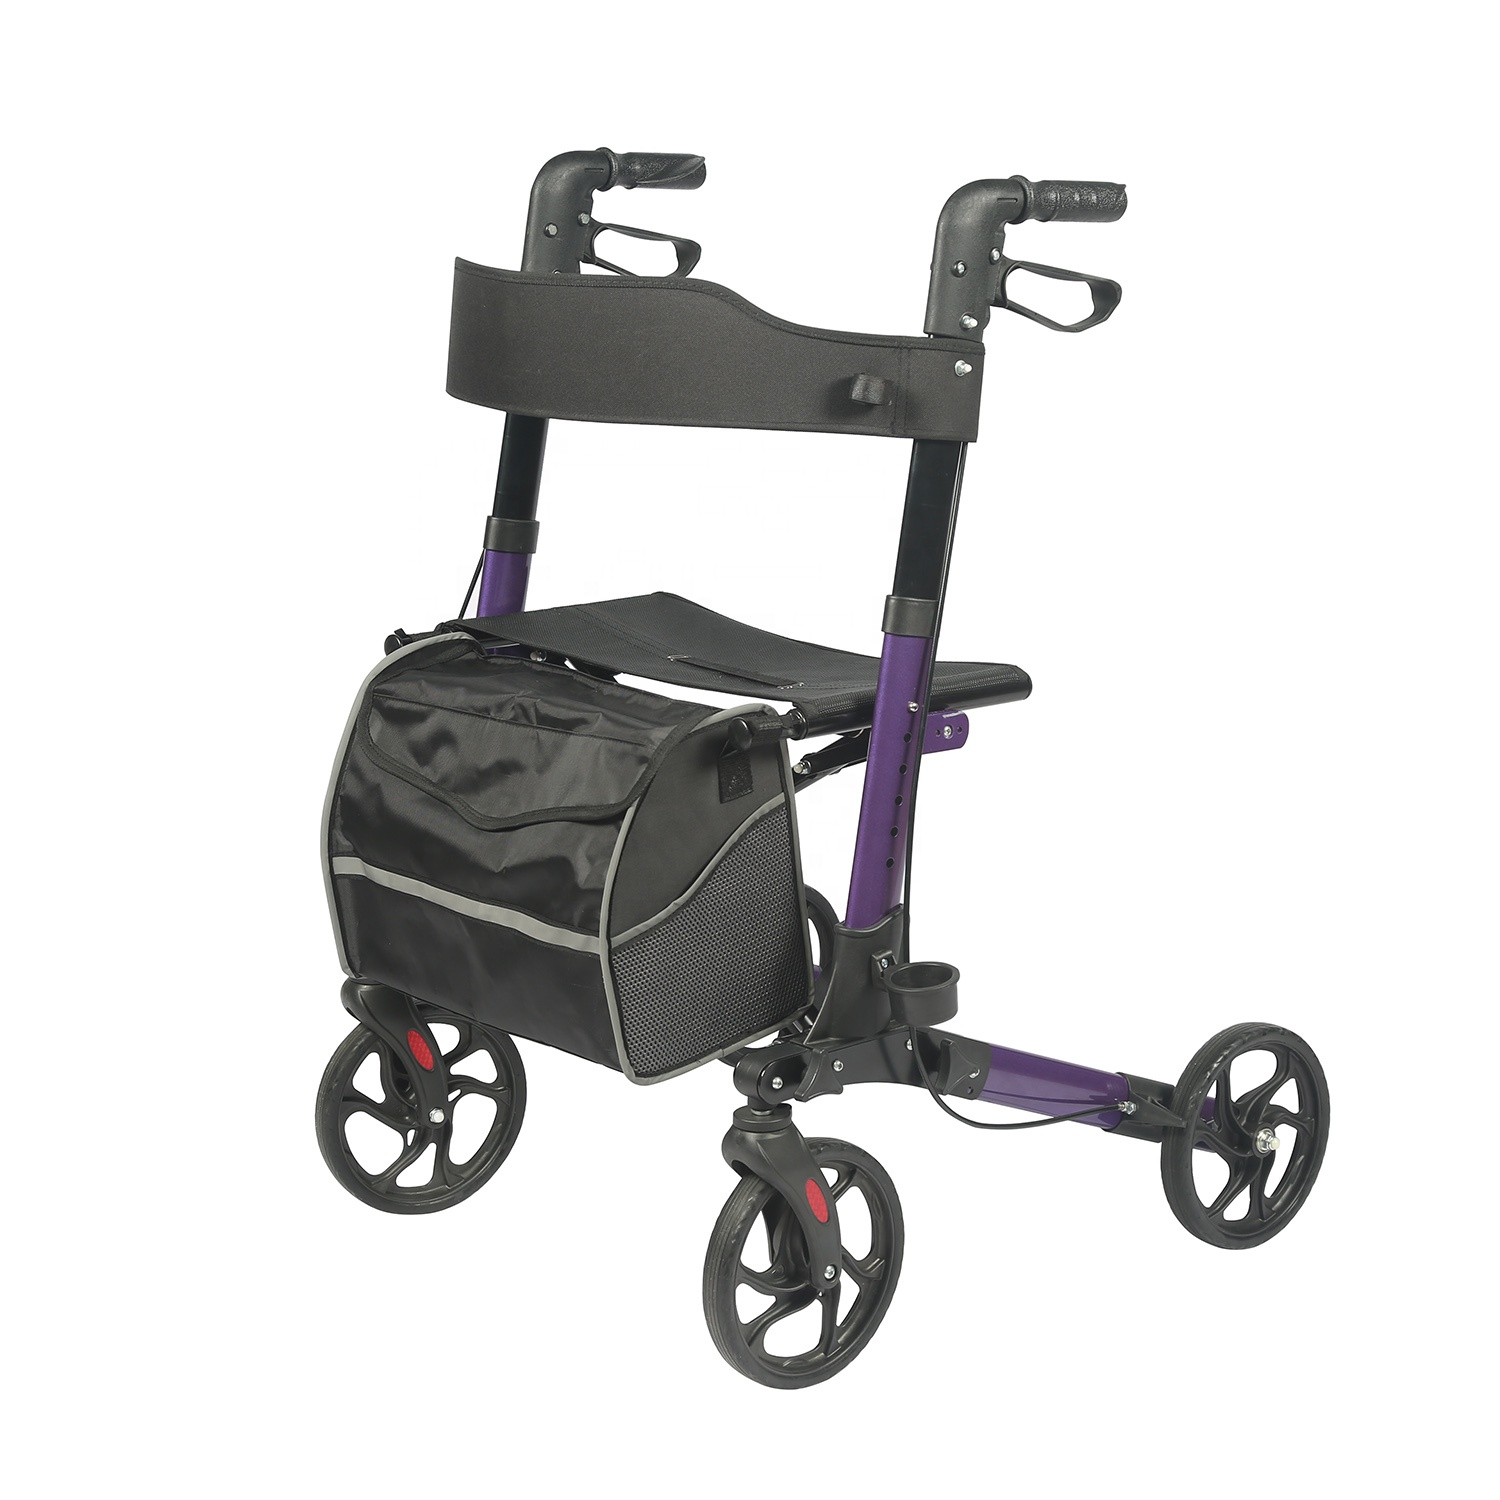 Alumínium Rollator Walker üléssel és kerekekkel, könnyű és összecsukható, gördülő sétáló 300 fontot támogat az idősek Tra01 számára